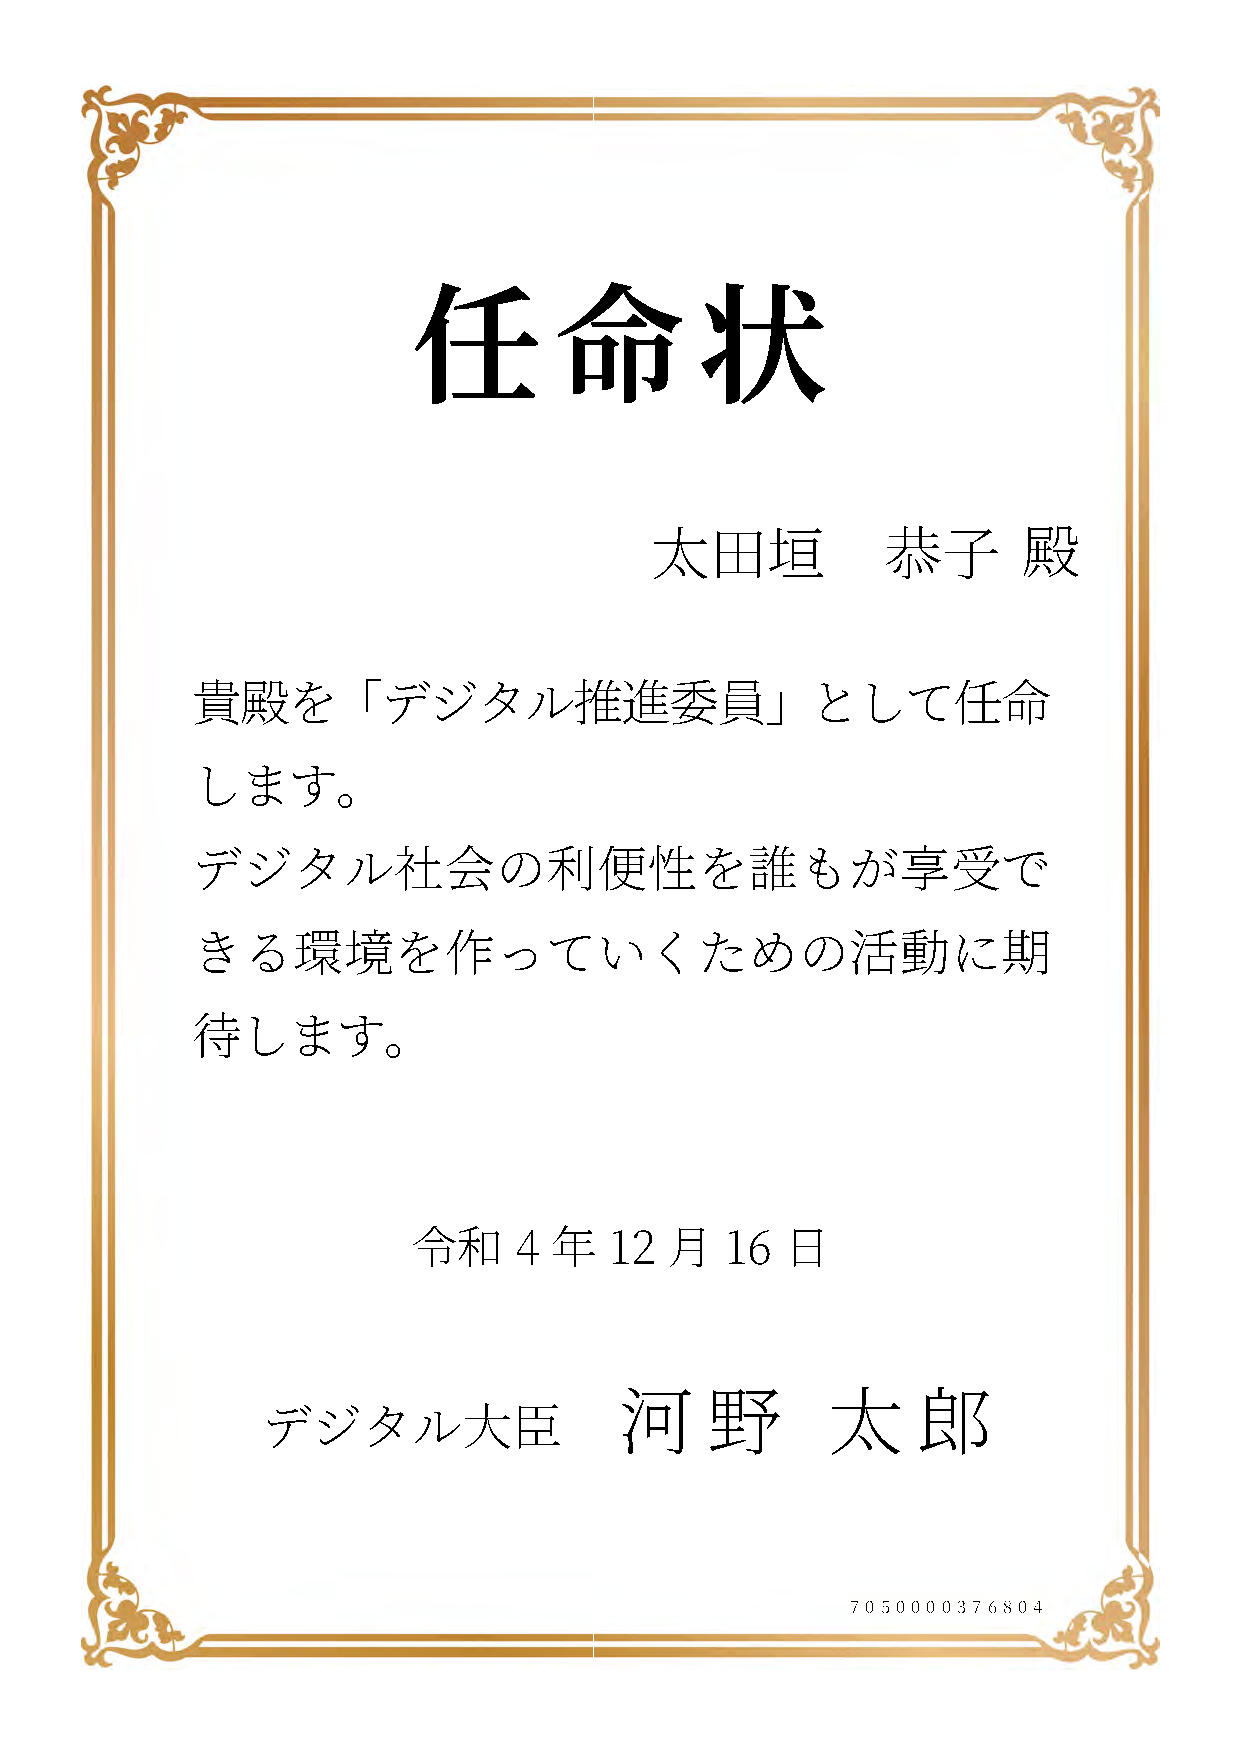 デジタル庁より『デジタル推進委員』に ANNAI 副社長の太田垣恭子が任命されました。